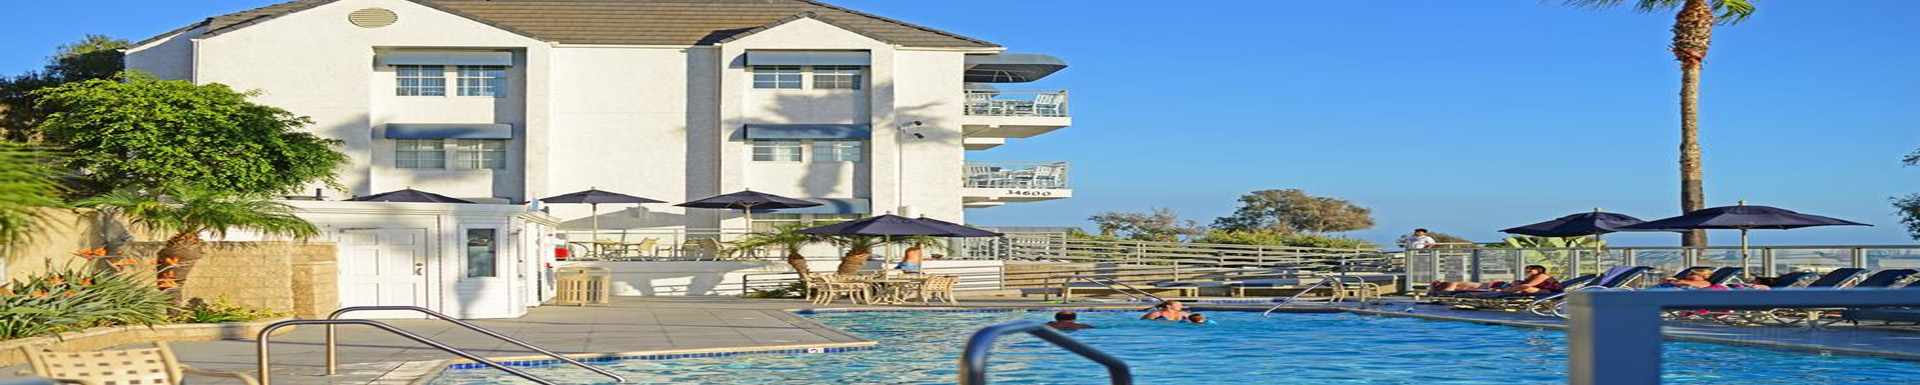 Riviera Beach and Spa Resort